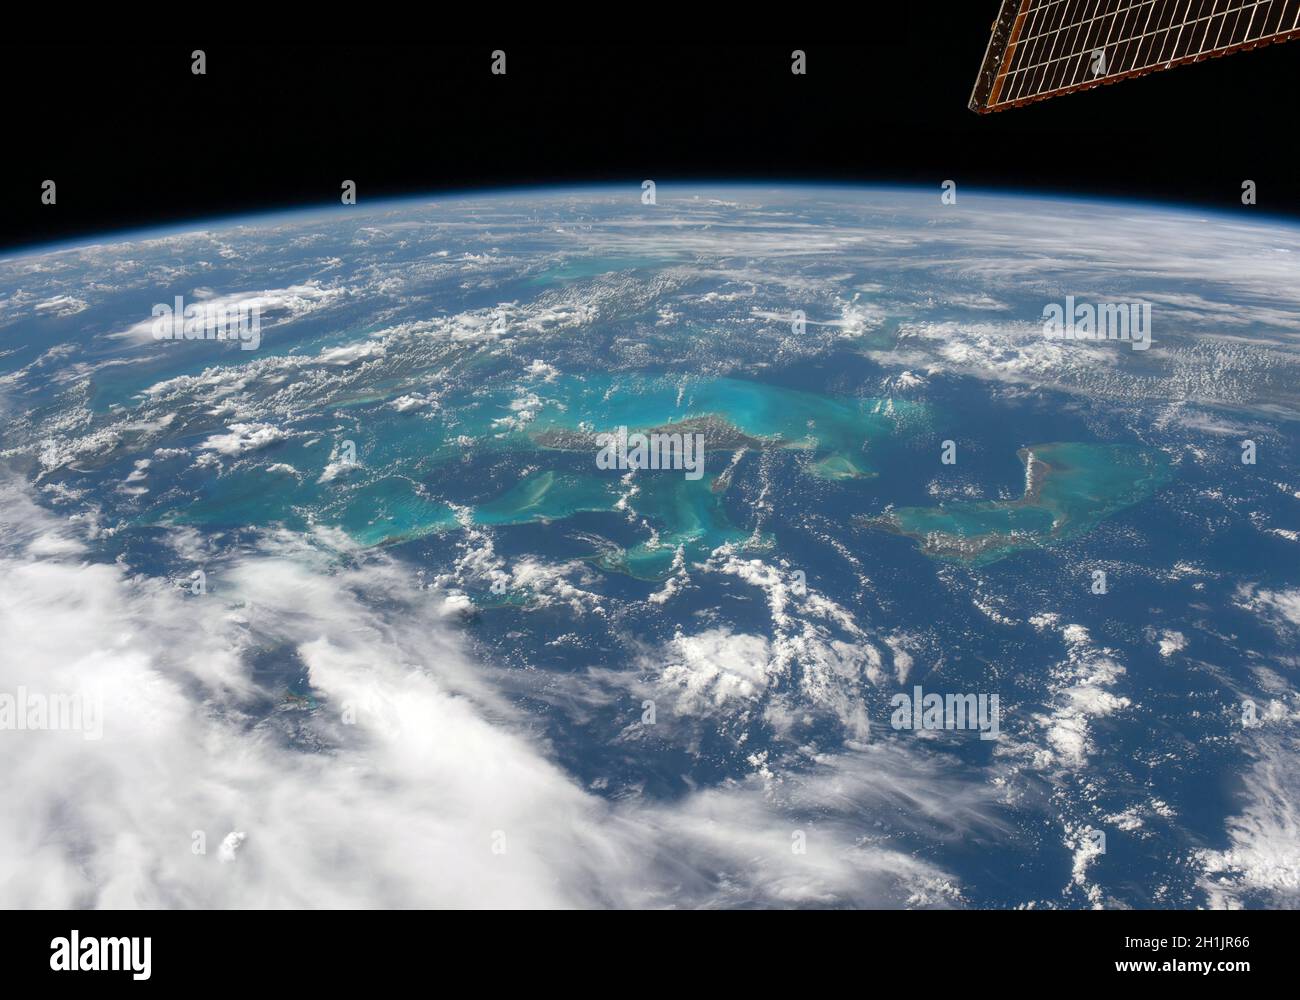 Una visione della Terra dalla Stazione spaziale Internazionale: I Caraibi una versione ottimizzata e potenziata digitalmente di un'immagine della NASA. Credit NASA / A. Hoshide Foto Stock